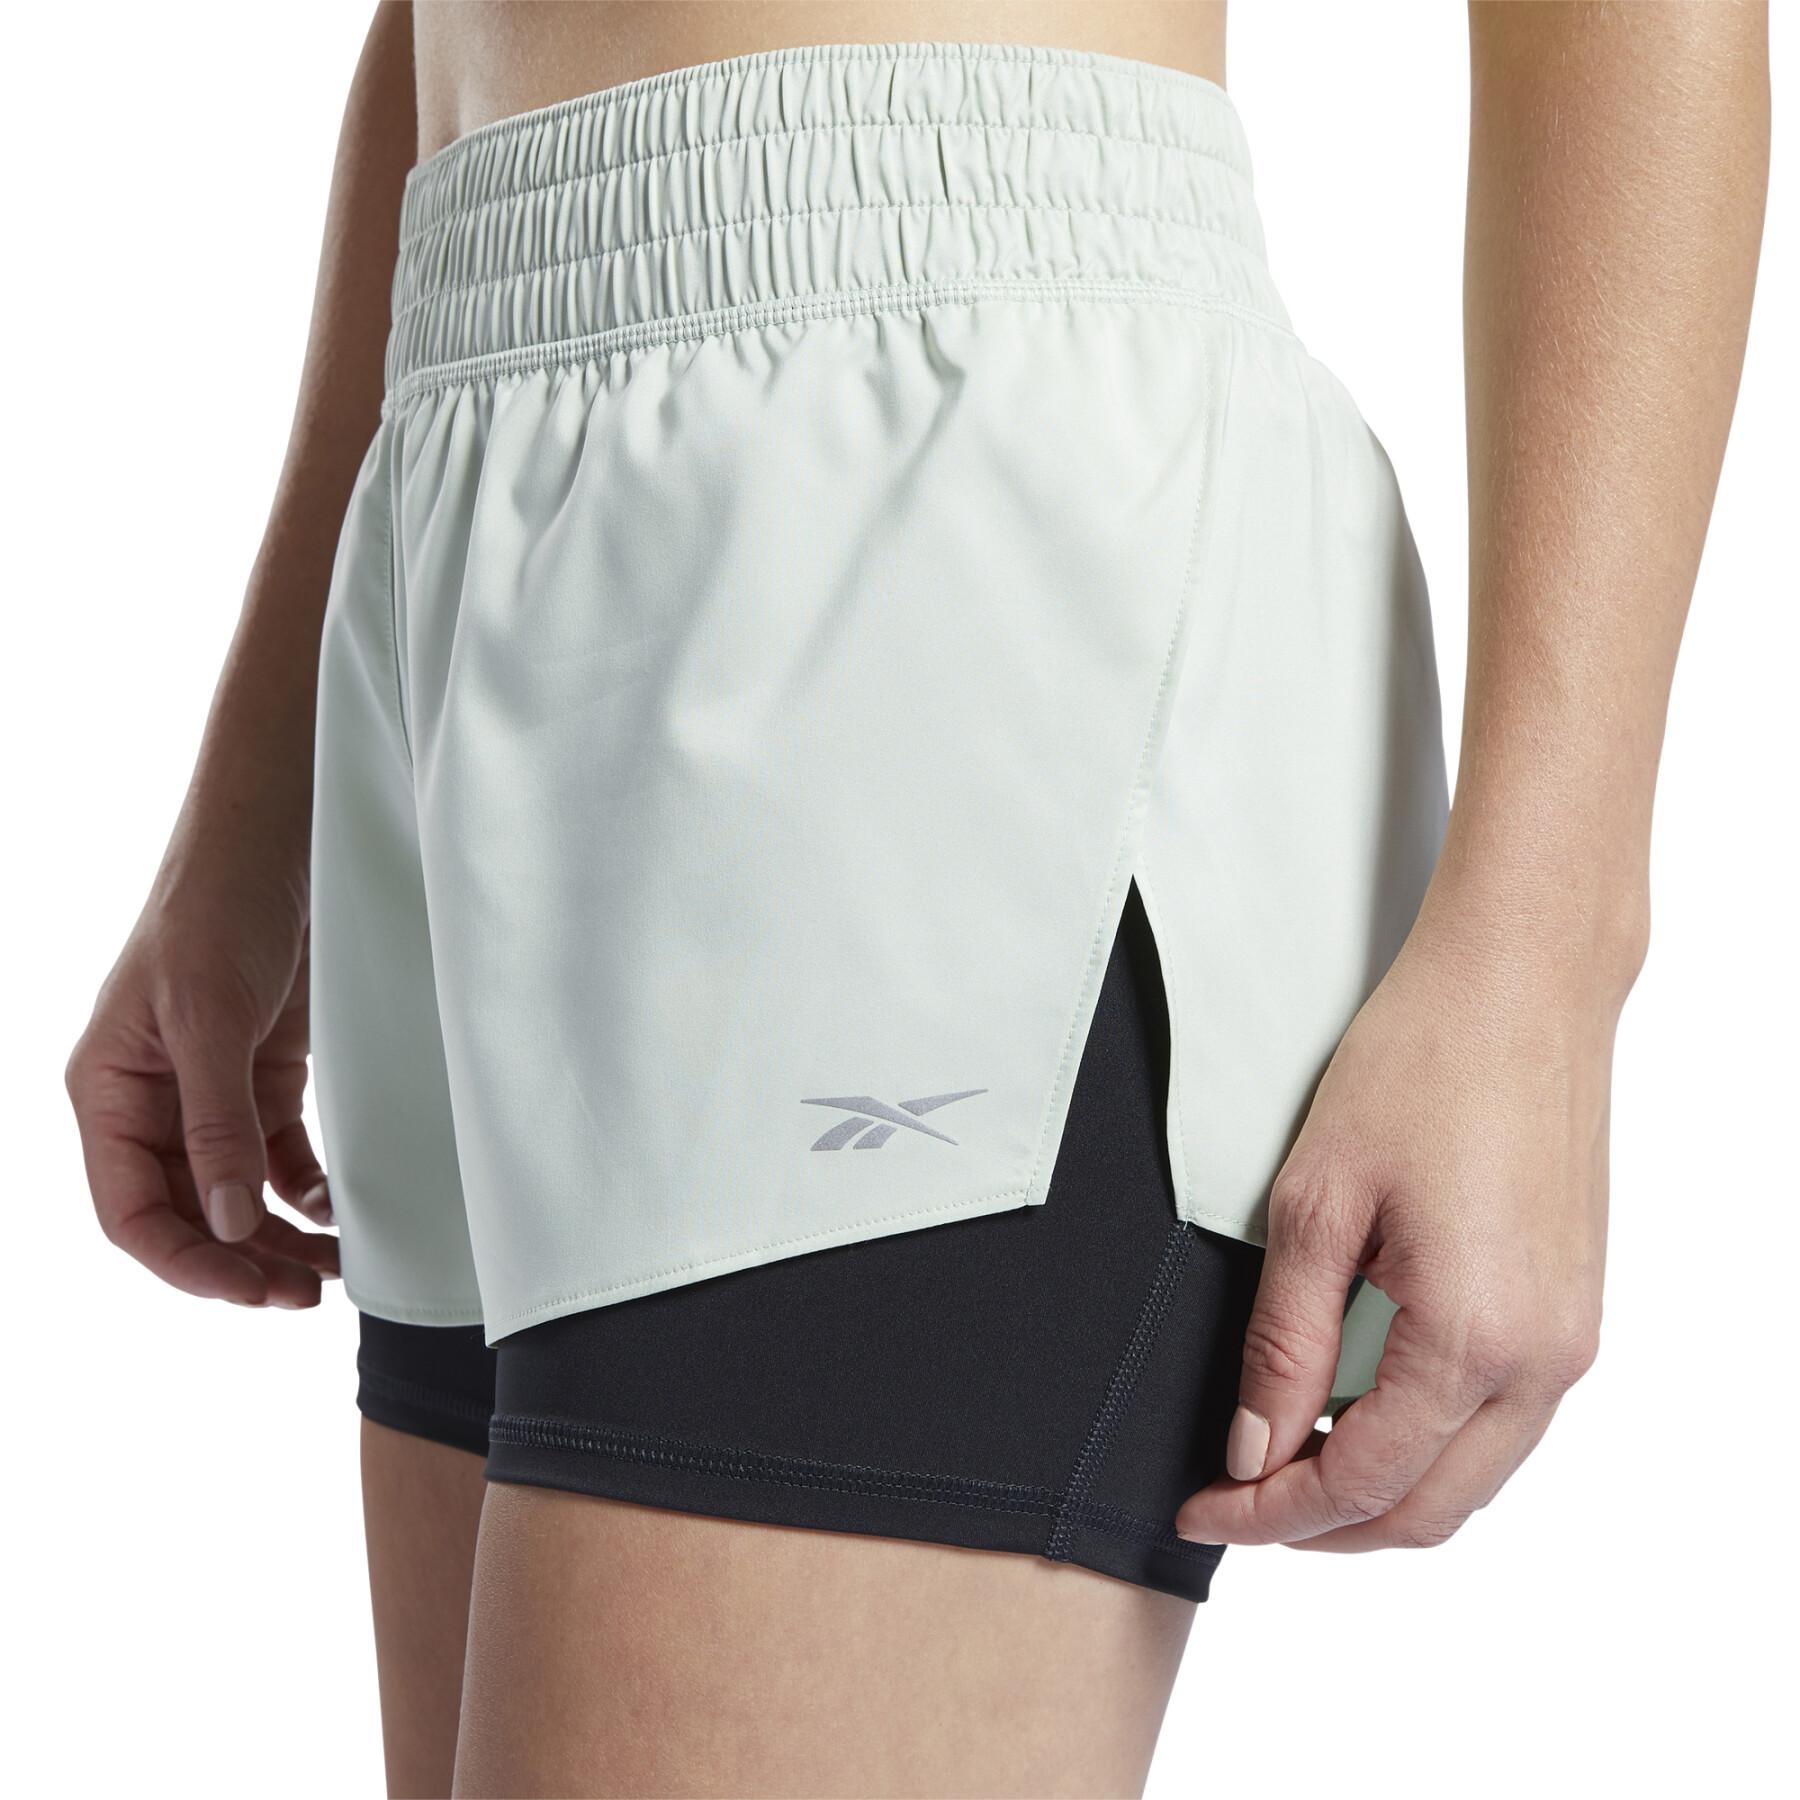 Pantalones cortos de running 2 en 1 para mujer Reebok